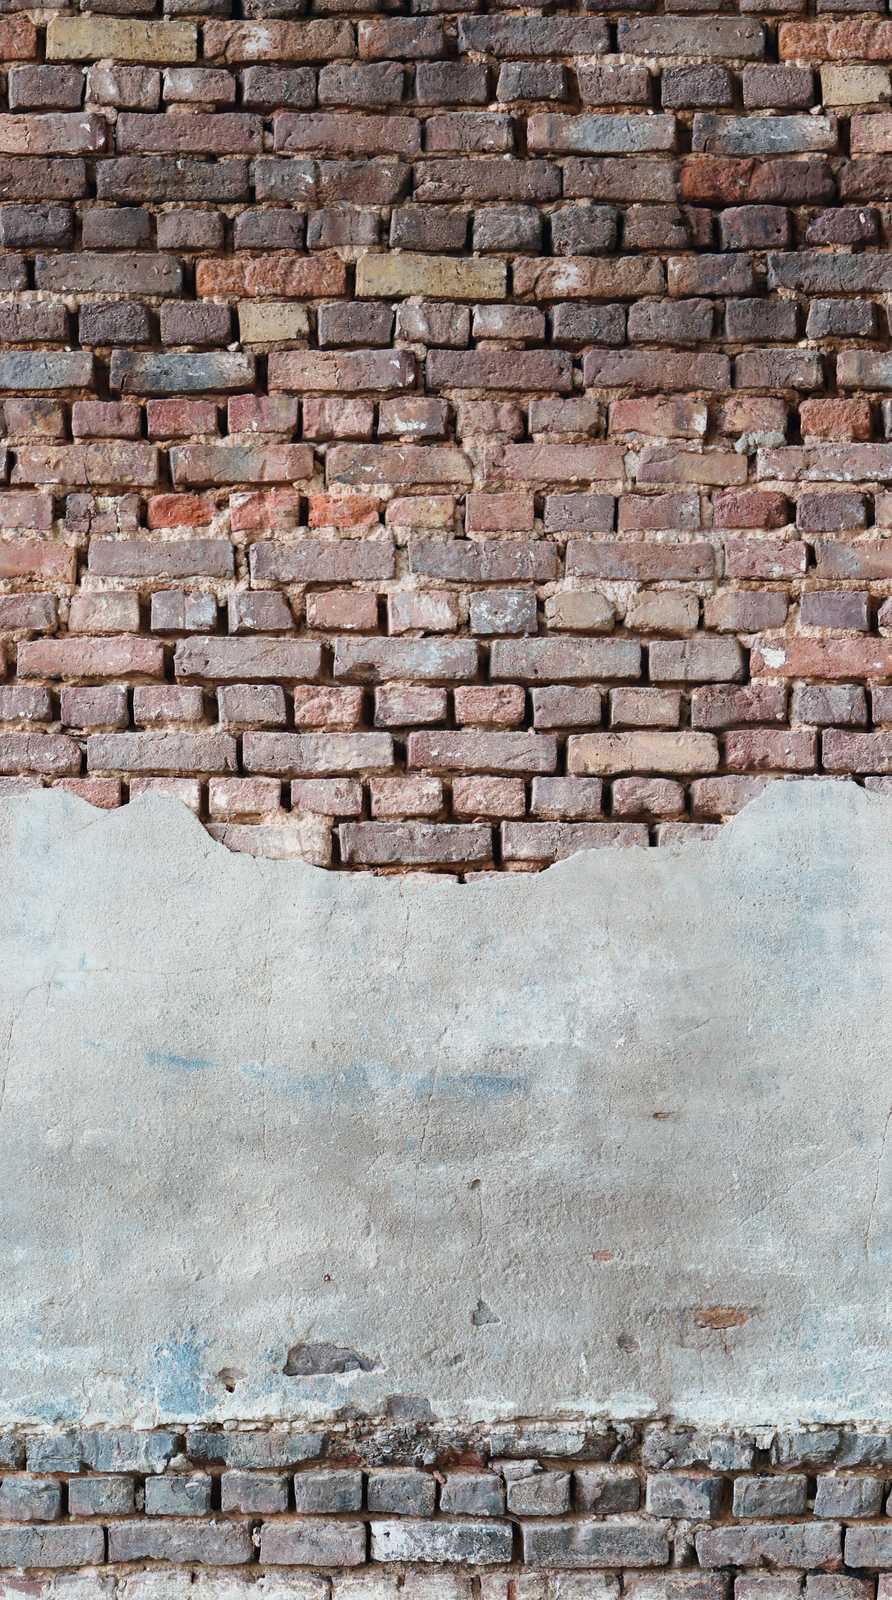             Wallpaper novelty | wall optics motif wallpaper bricks & plaster
        